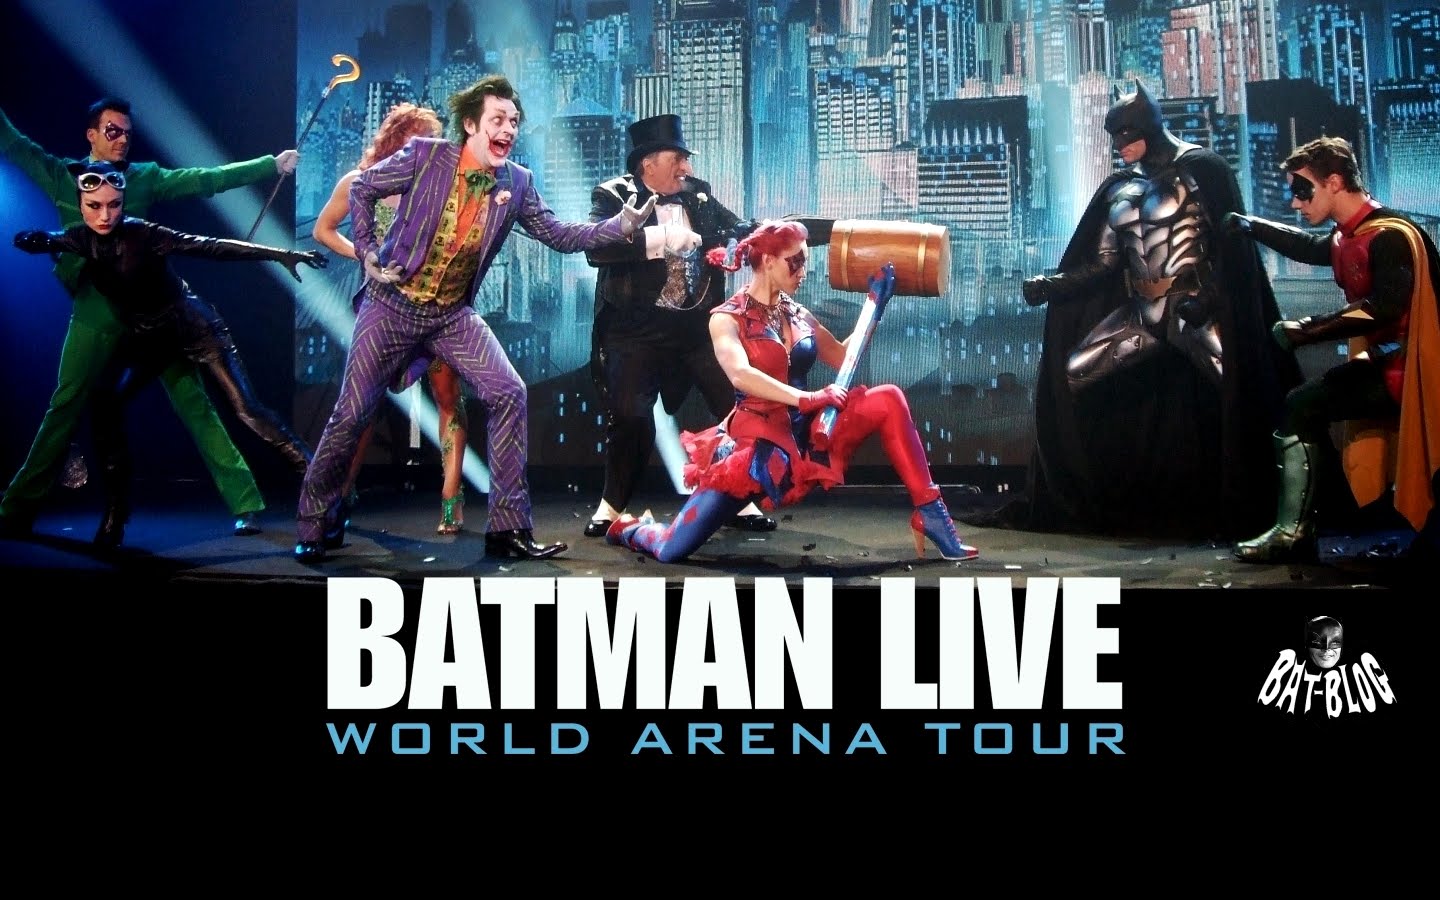 http://1.bp.blogspot.com/-Eauwx8pL3Fc/TeZ-nrd2NTI/AAAAAAAAPR8/upJIk15lmMY/s1600/wallpaper-batman-live-world-arena-tour-tickets.jpg